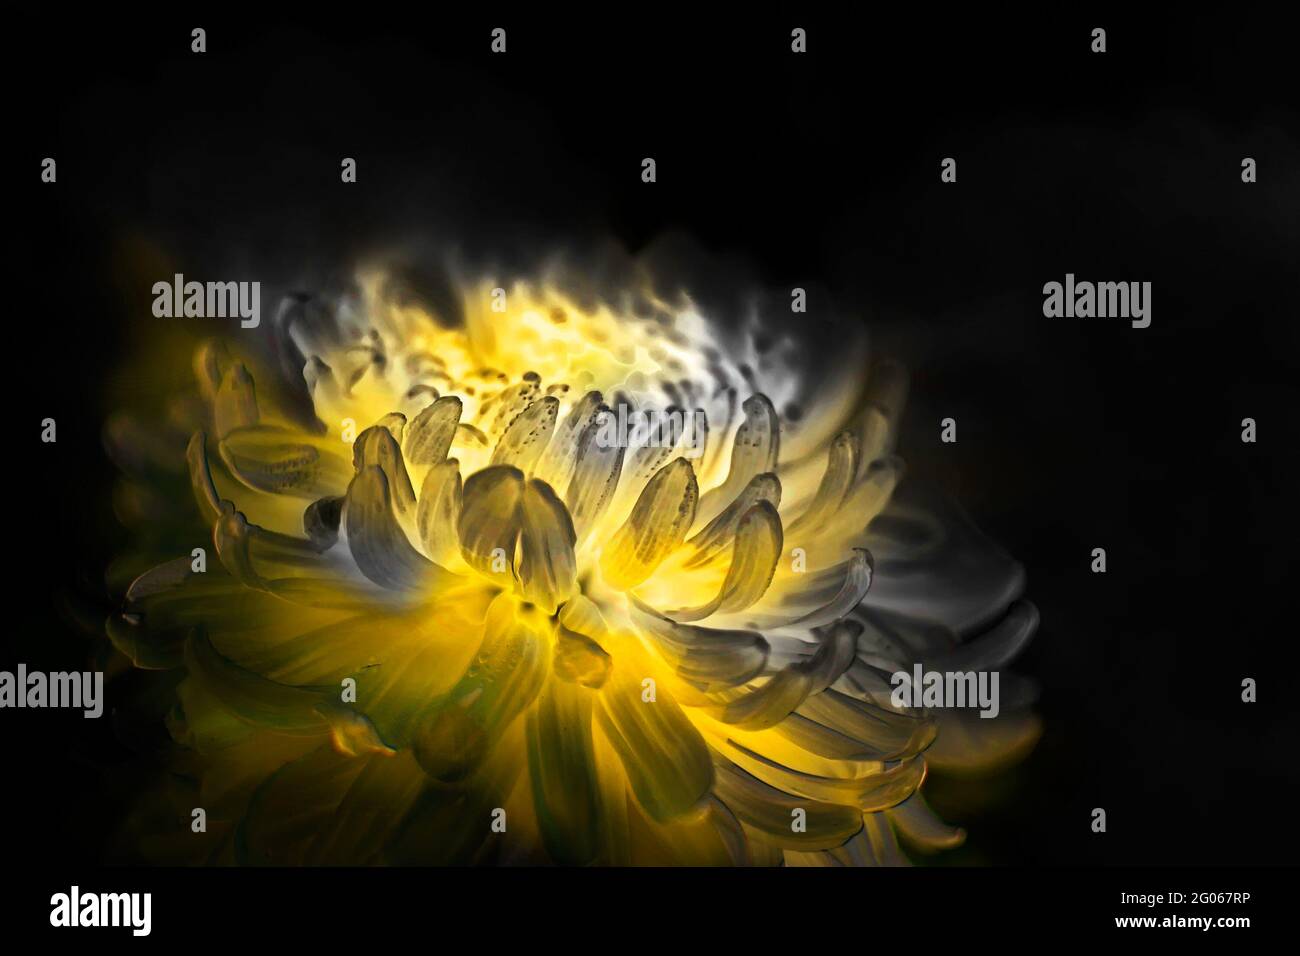 Immagine artistica del fiore, petali gialli del fiore della dahlia con sfondo nero scuro a contrasto, fotografia di scorta della natura Foto Stock